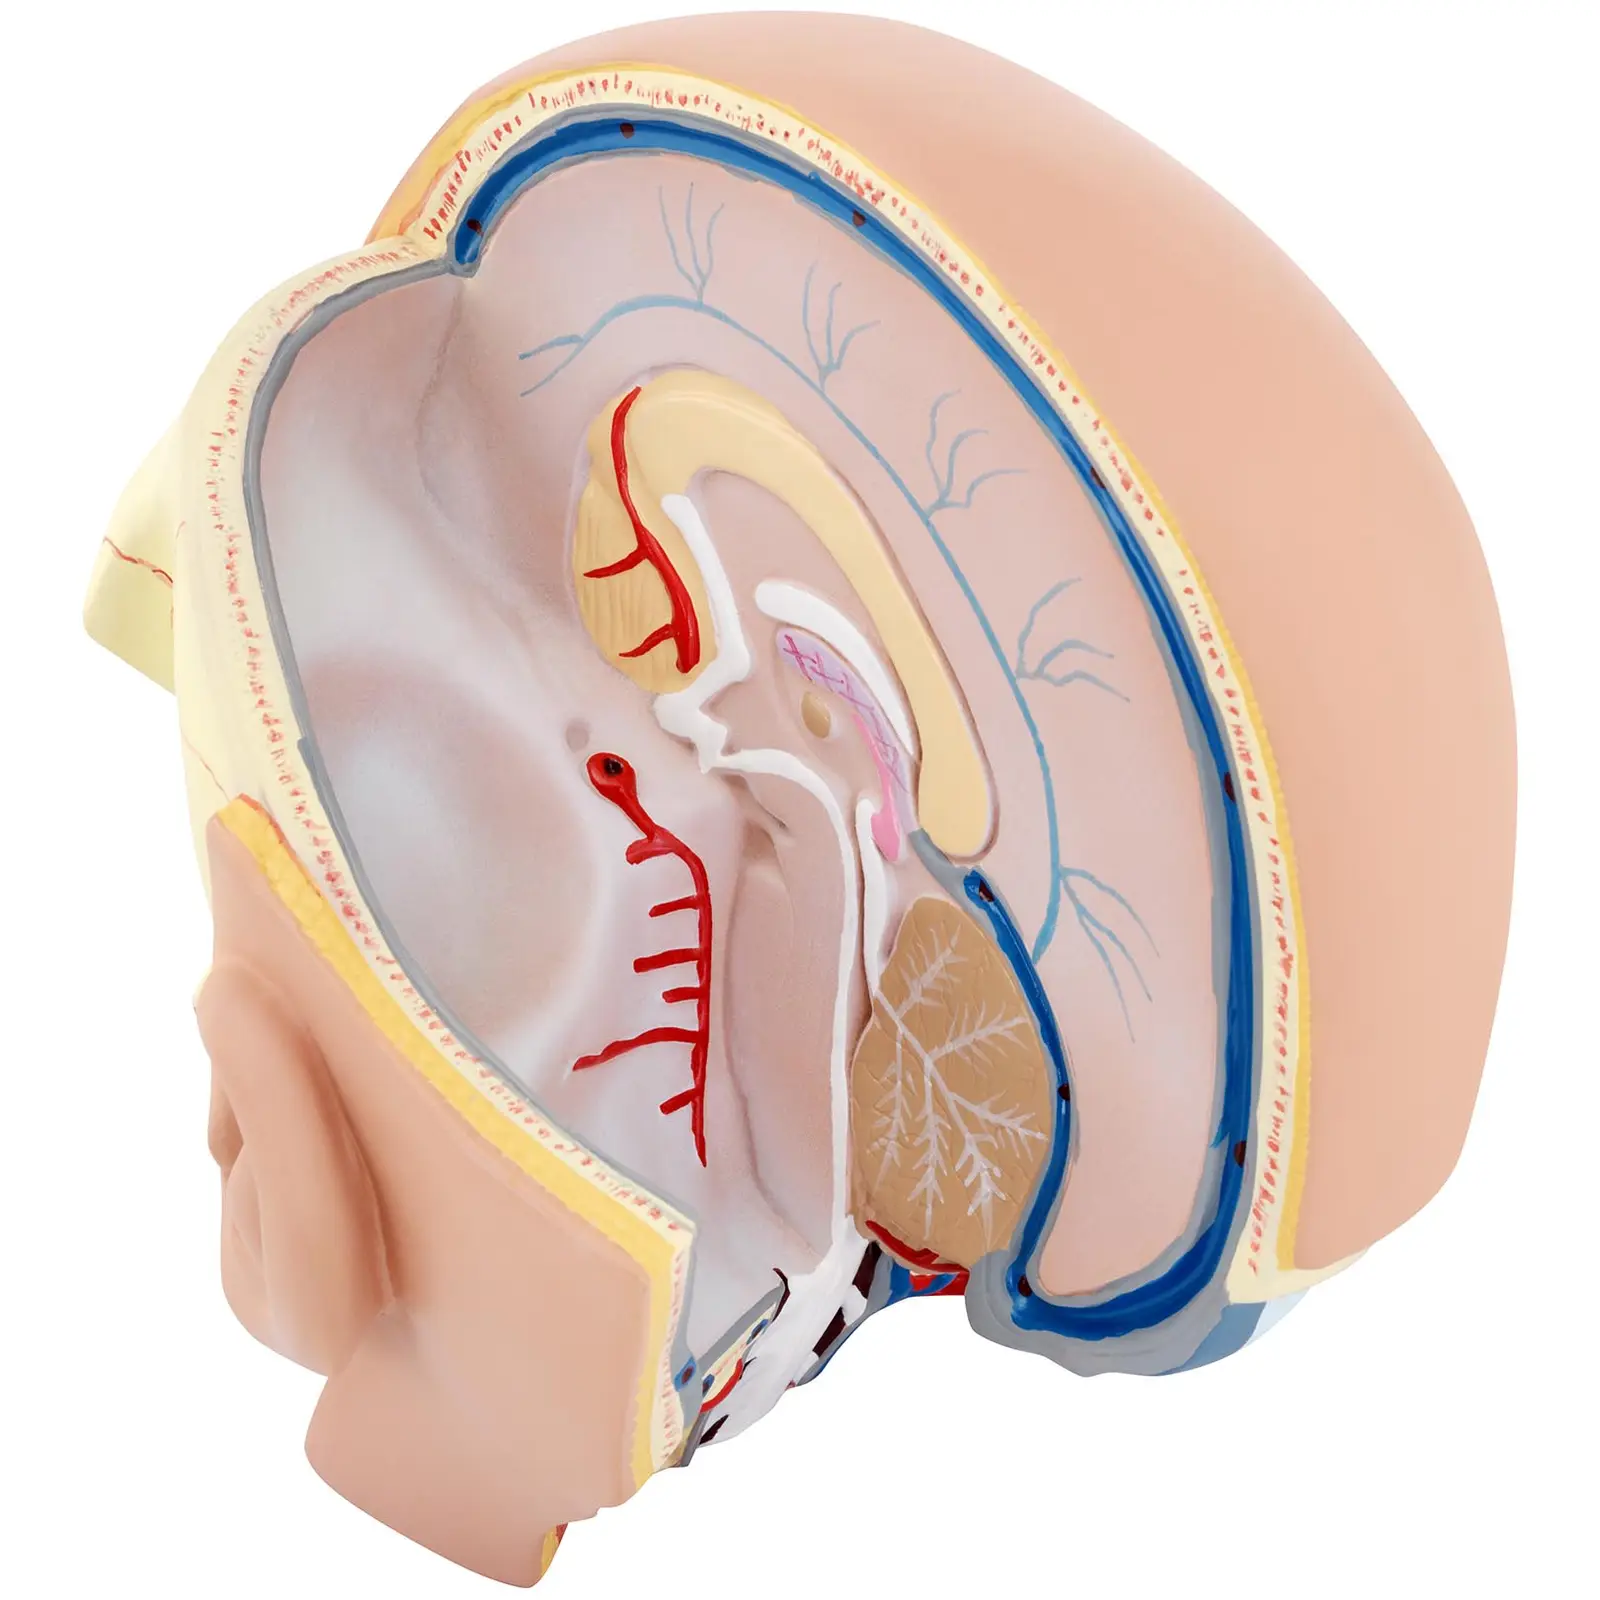 Huvud och hjärna - Anatomisk modell - Kan demonteras i två delar - Originalstorlek